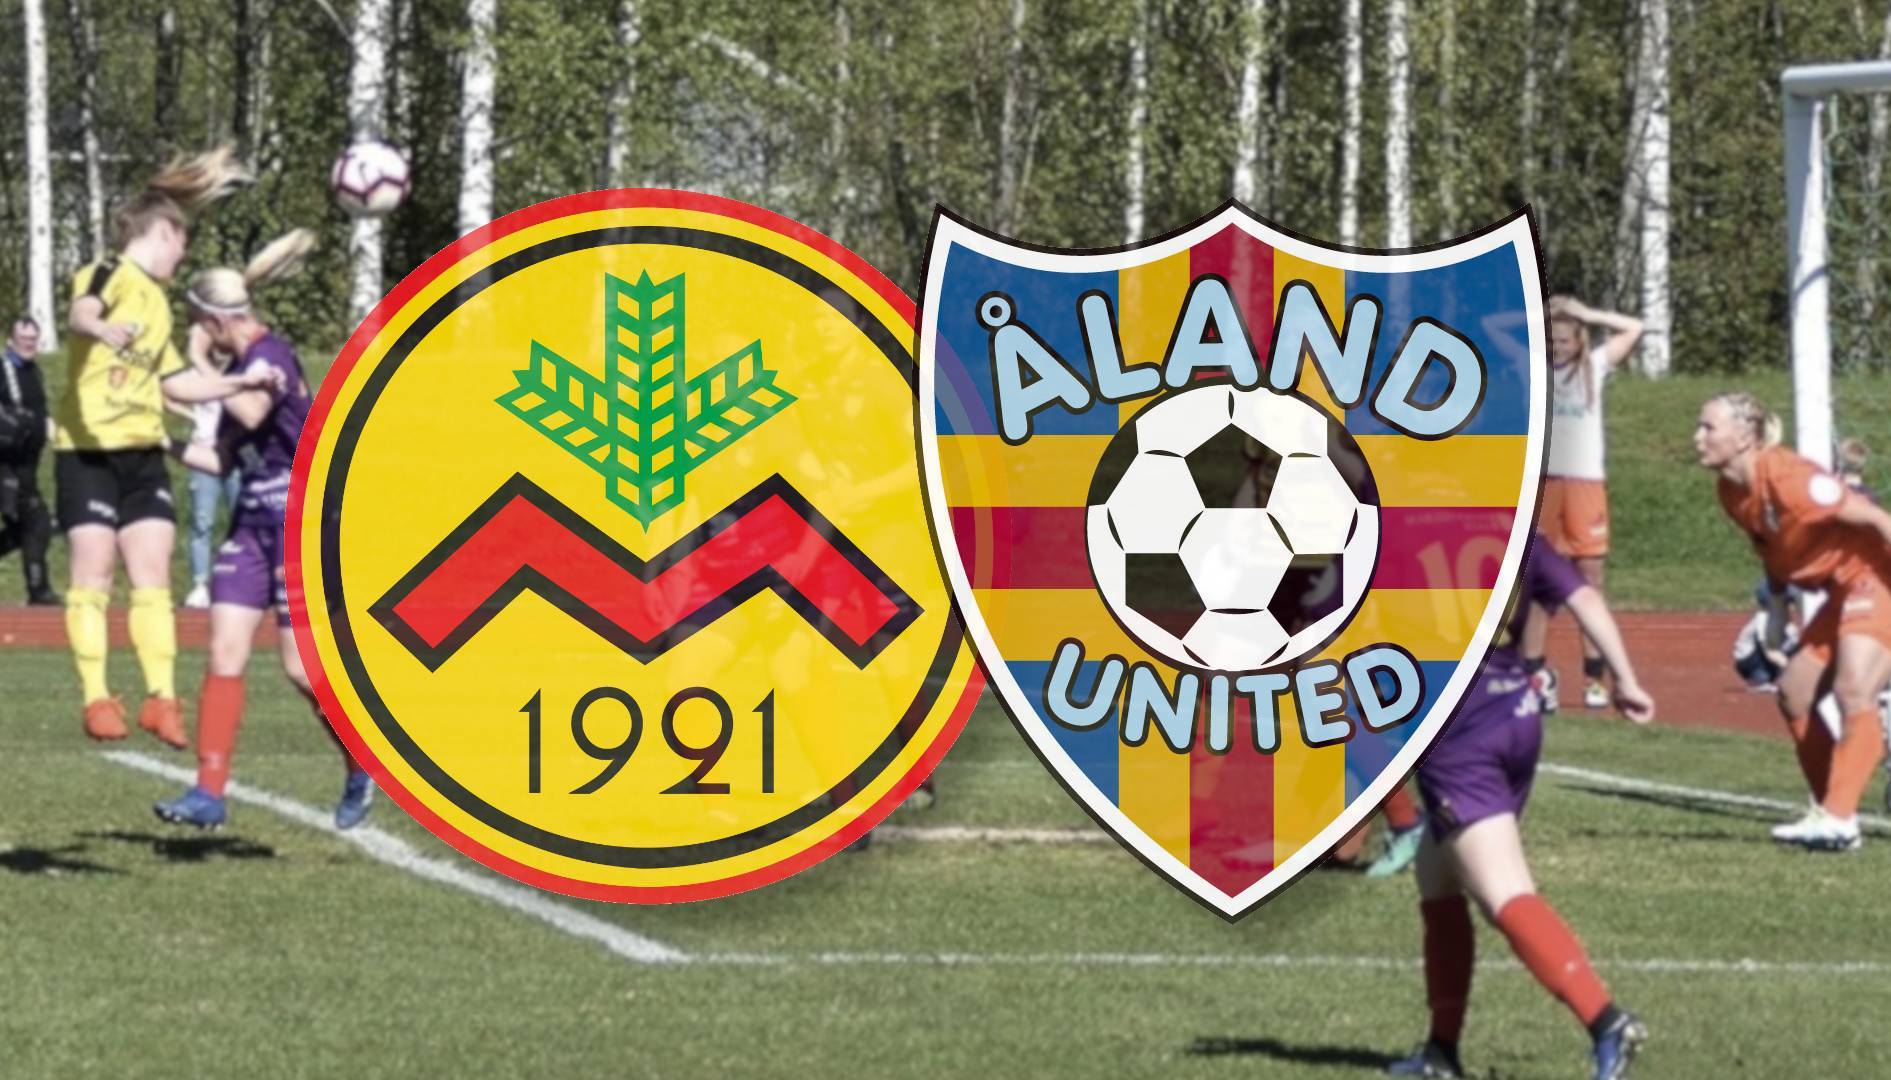 IK Myran och Åland United i samarbete - IK Myran ja Åland United yhteistyöhön